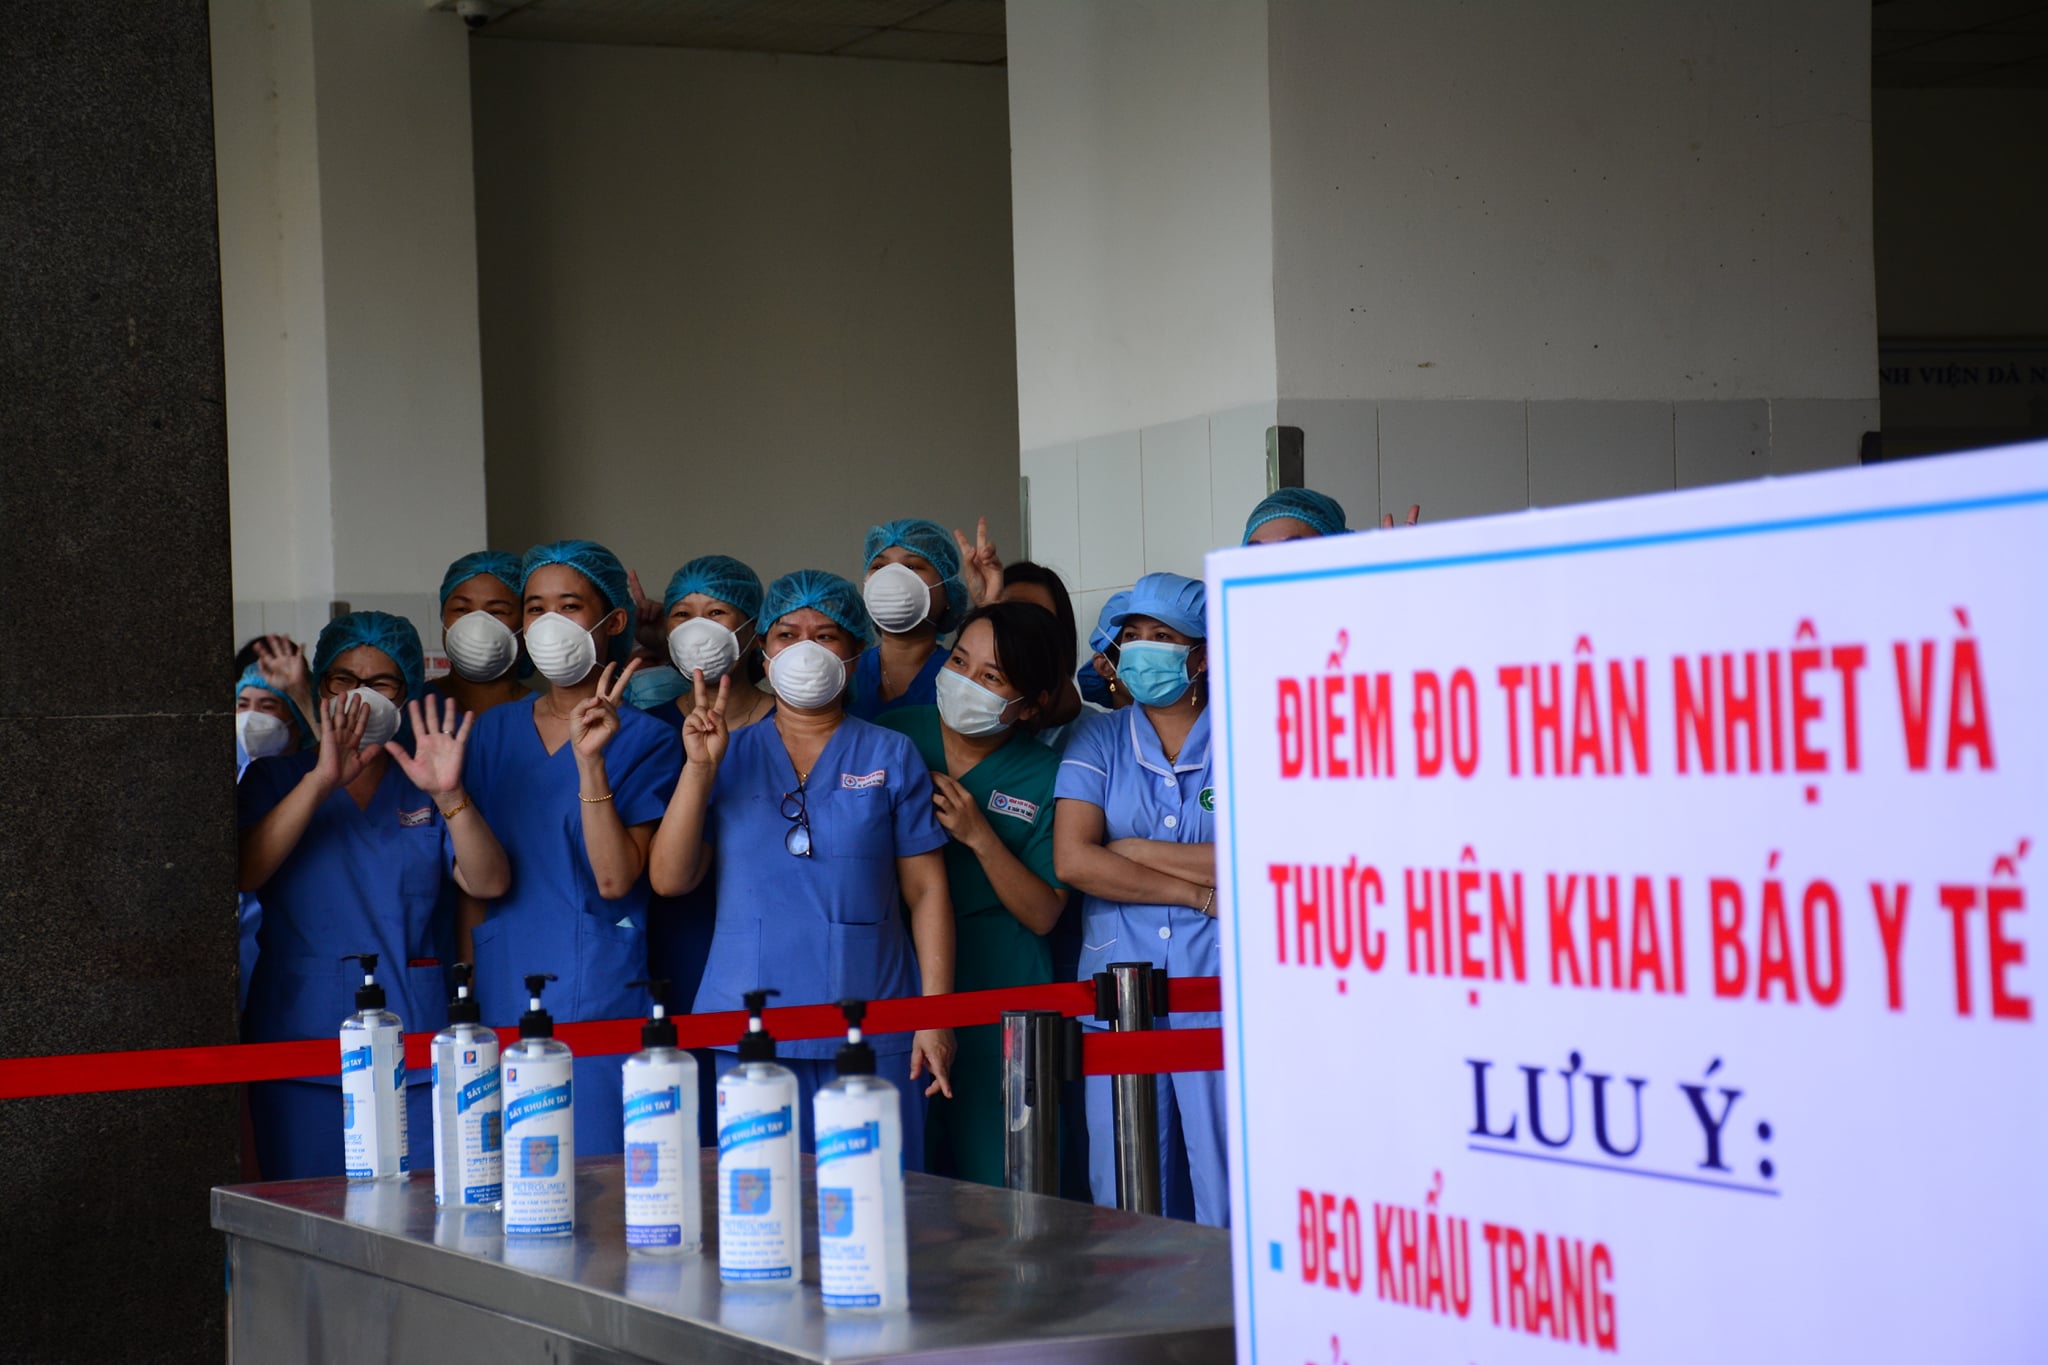 Bệnh viện Đà Nẵng đã cách ly trong 30 ngày vì dịch Covid-19.